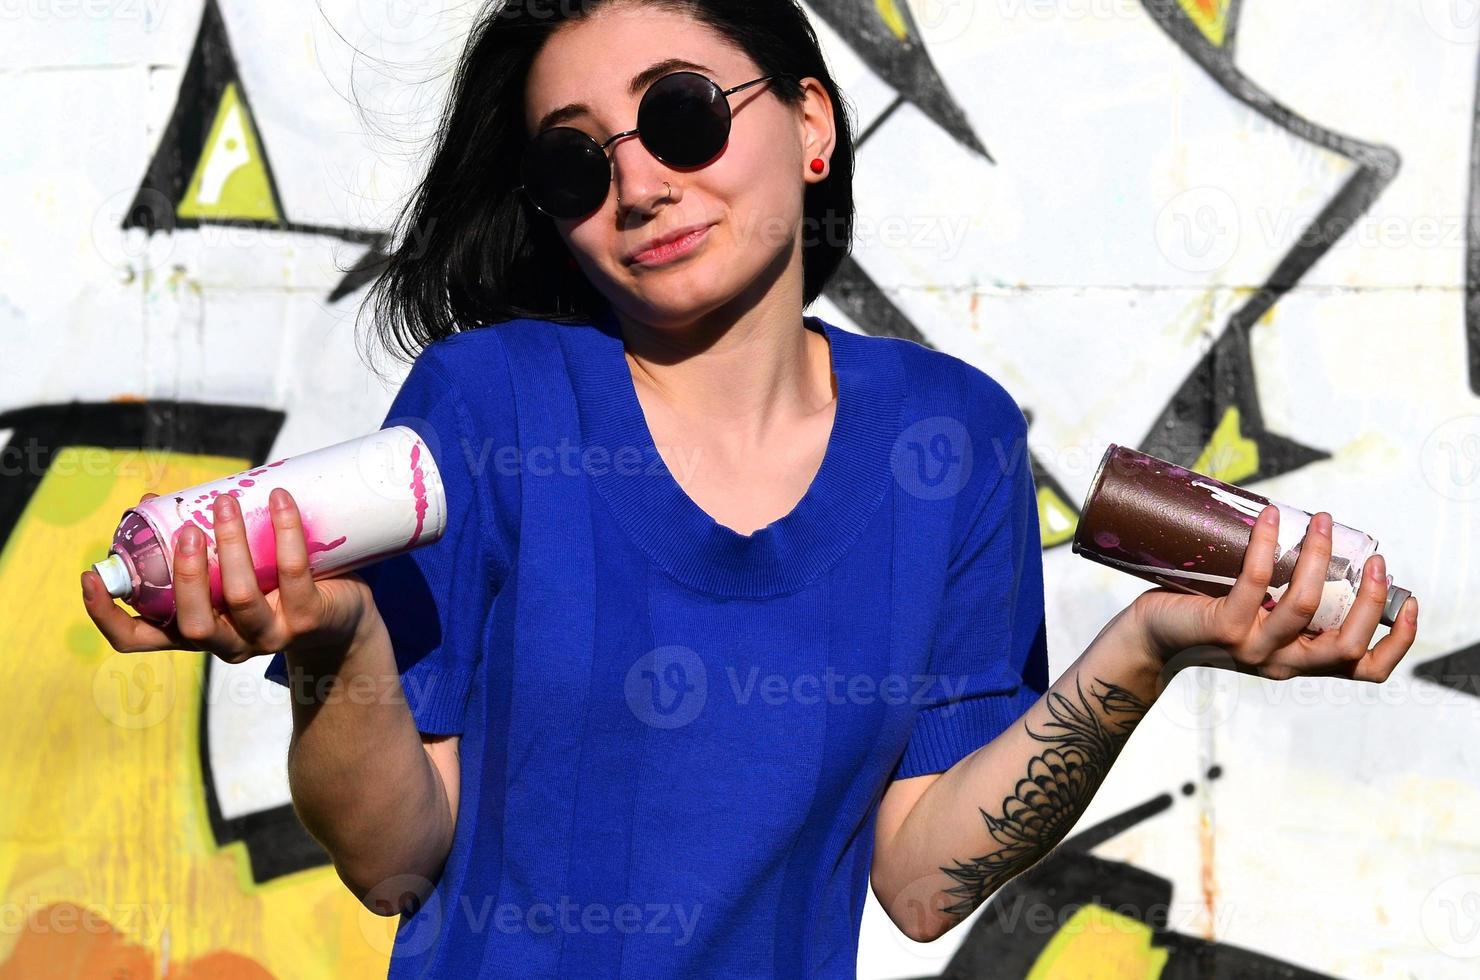 Porträt eines emotionalen jungen Mädchens mit schwarzen Haaren und Piercings. Foto eines Mädchens mit Aerosol-Farbdosen in den Händen auf einem Graffiti-Wand-Hintergrund. das Konzept der Straßenkunst und die Verwendung von Aerosolfarben